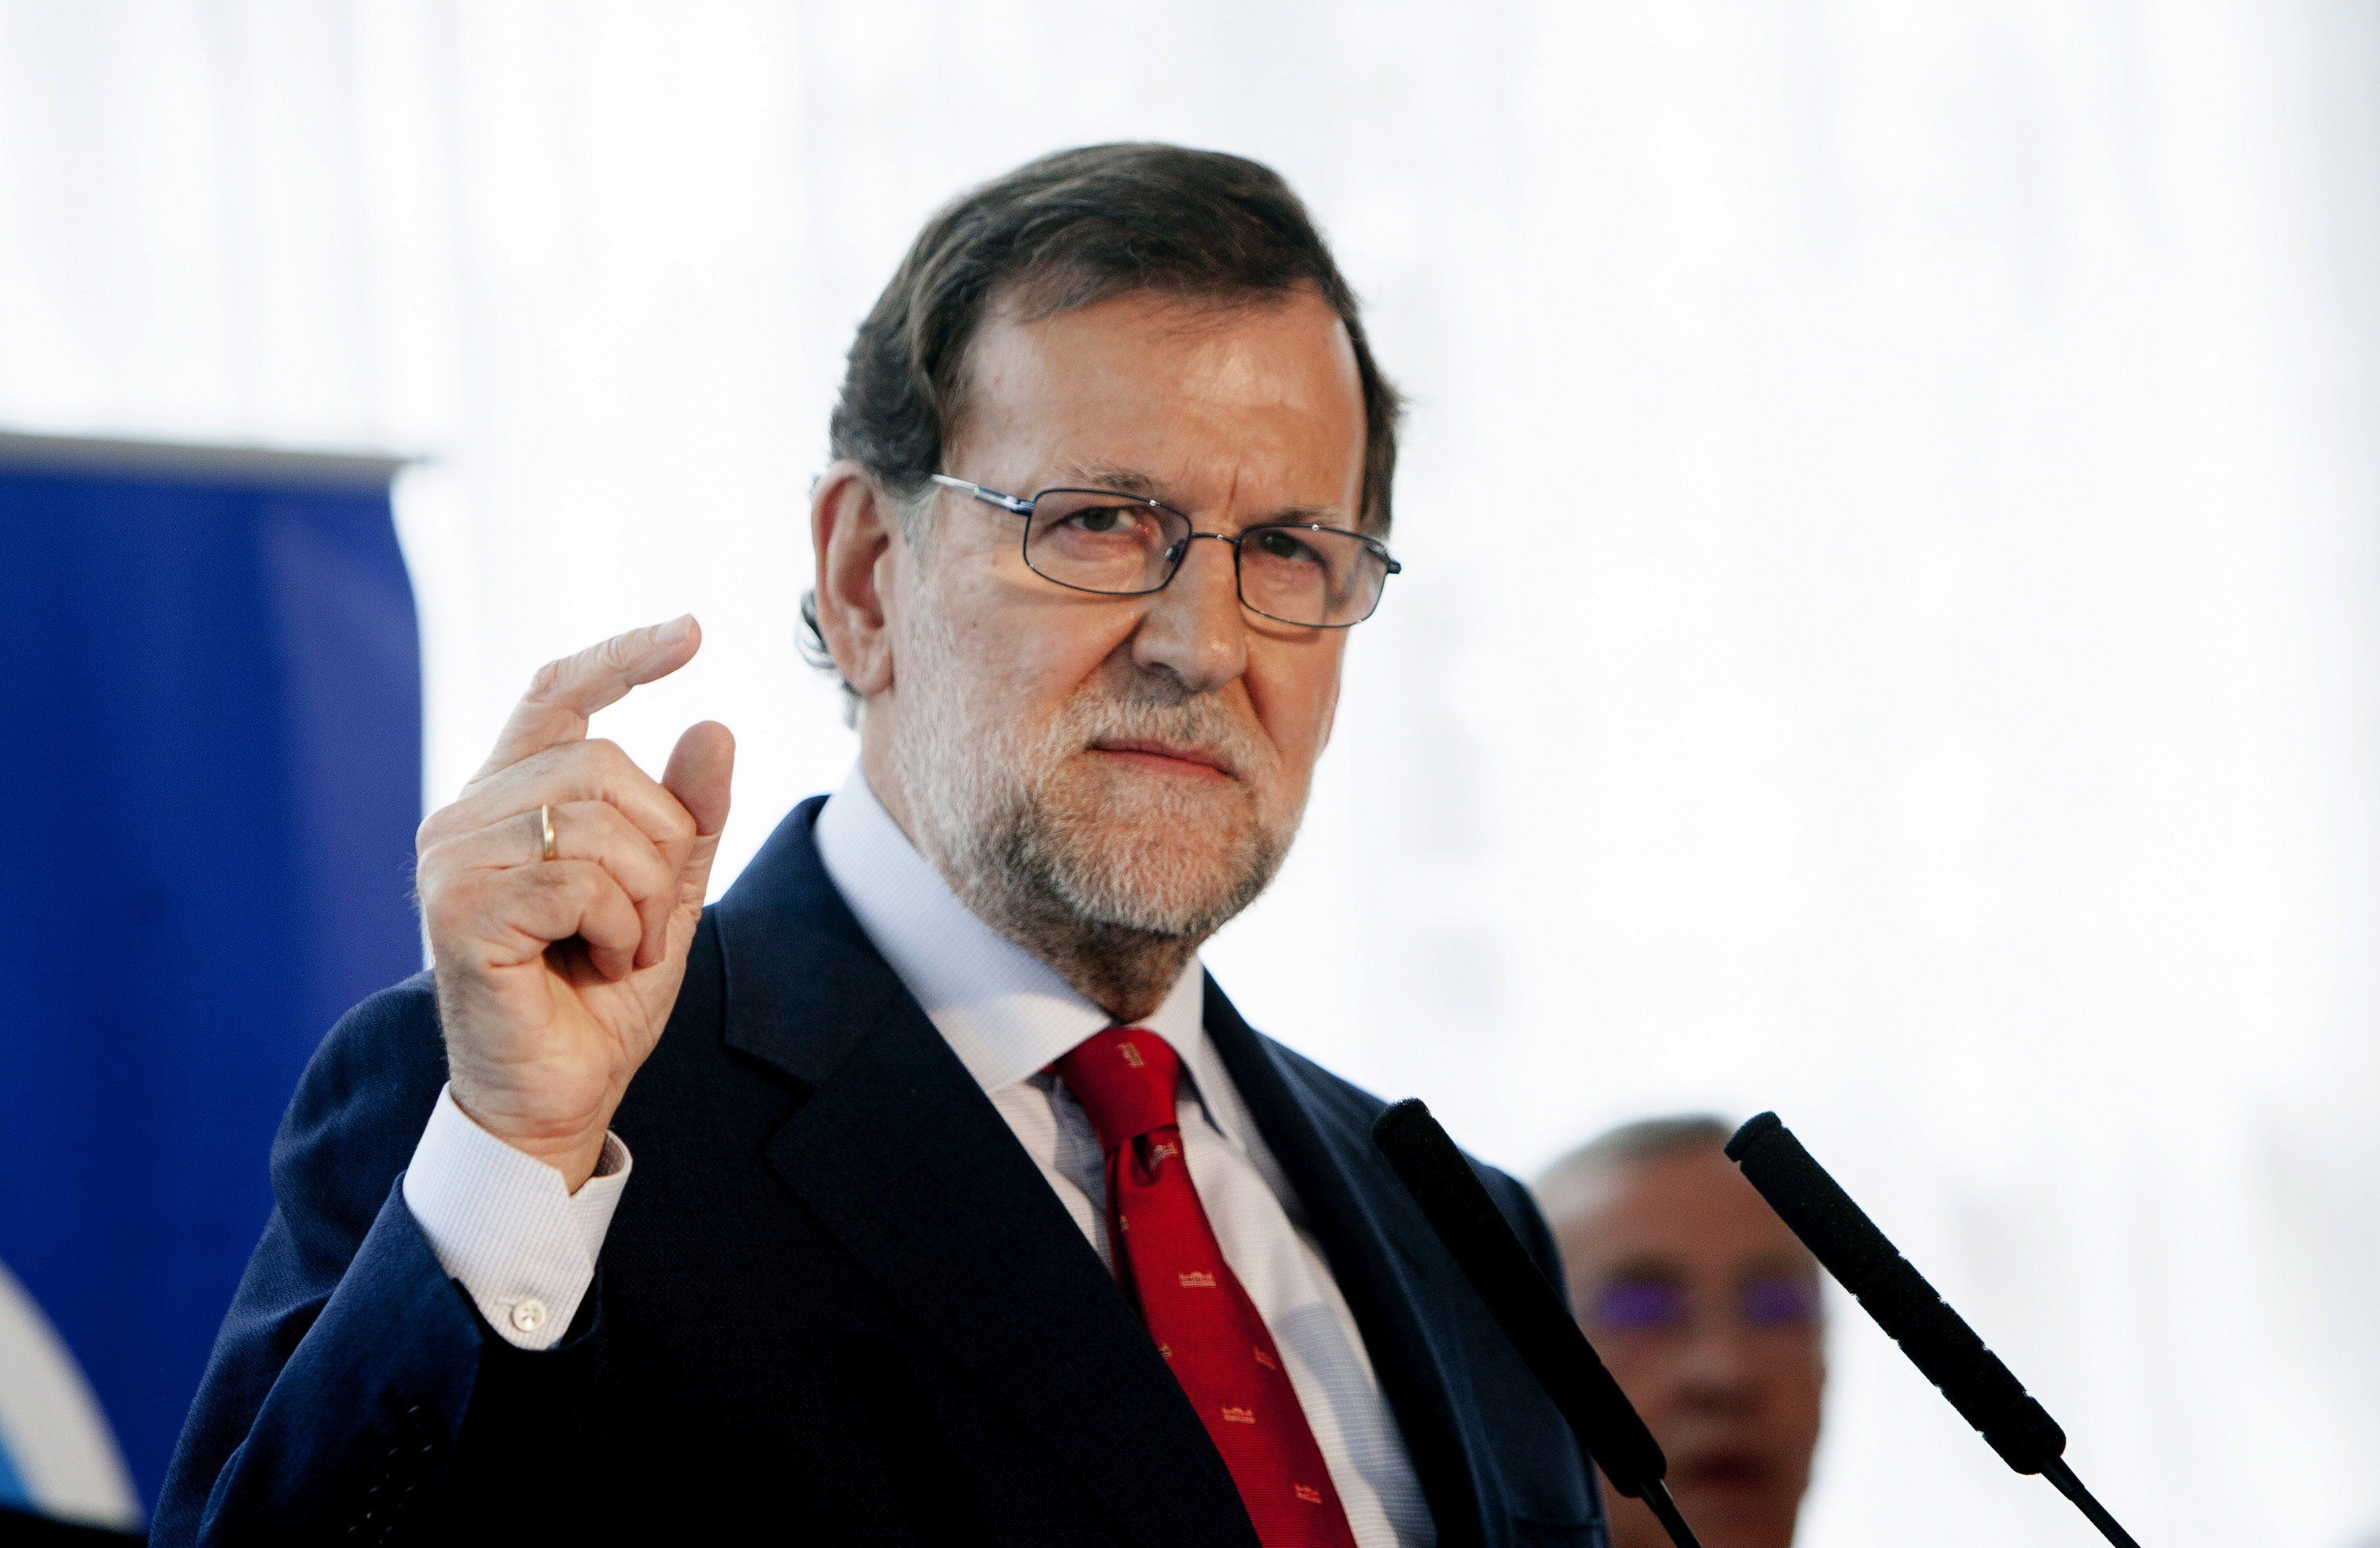 Rajoy "camina rápido" en dirección a su votante